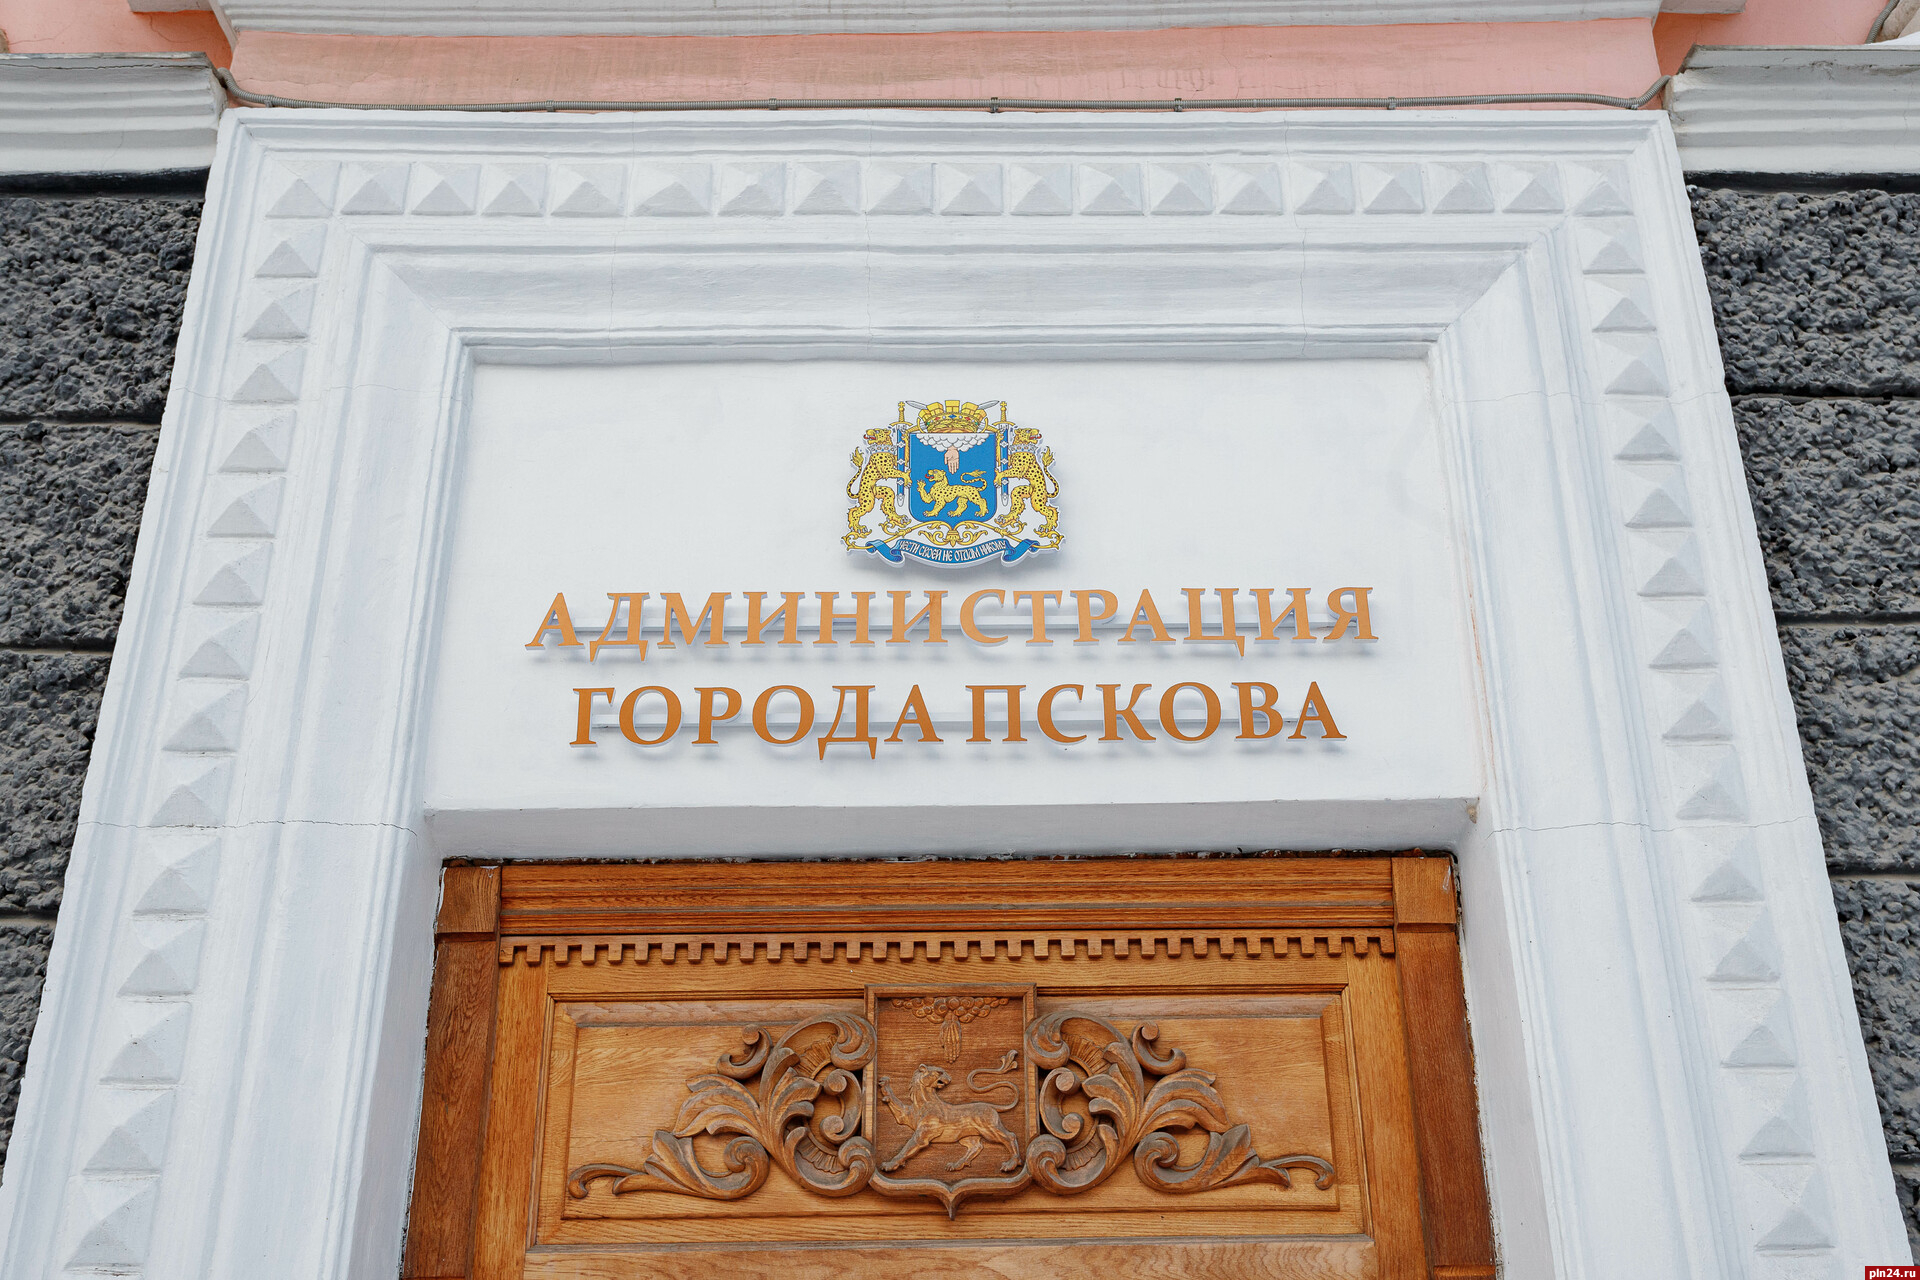 Положение об отделе по размещению некапитальных объектов утвердили в Пскове